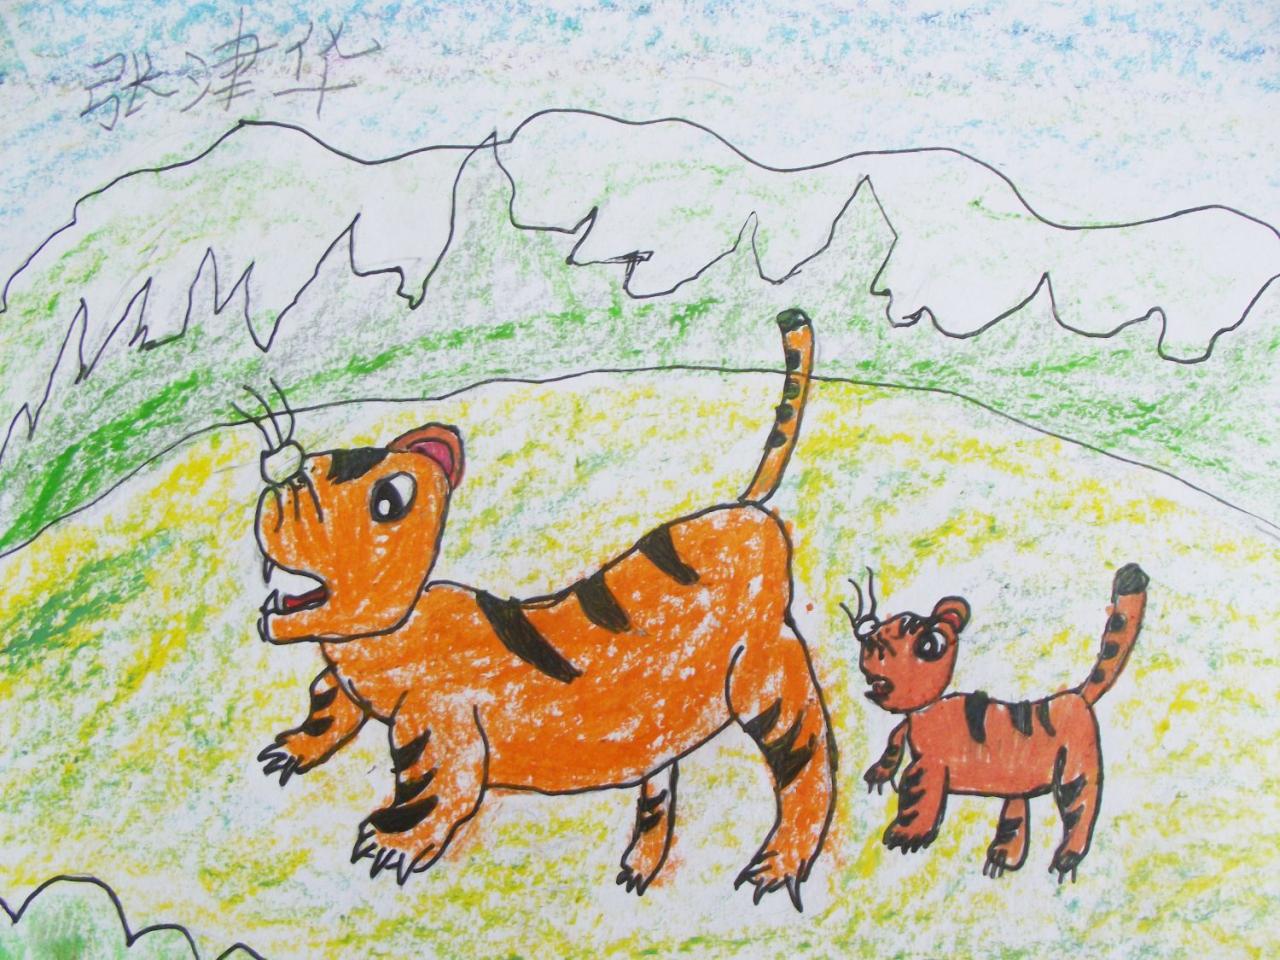 两只老虎儿歌儿童画图片